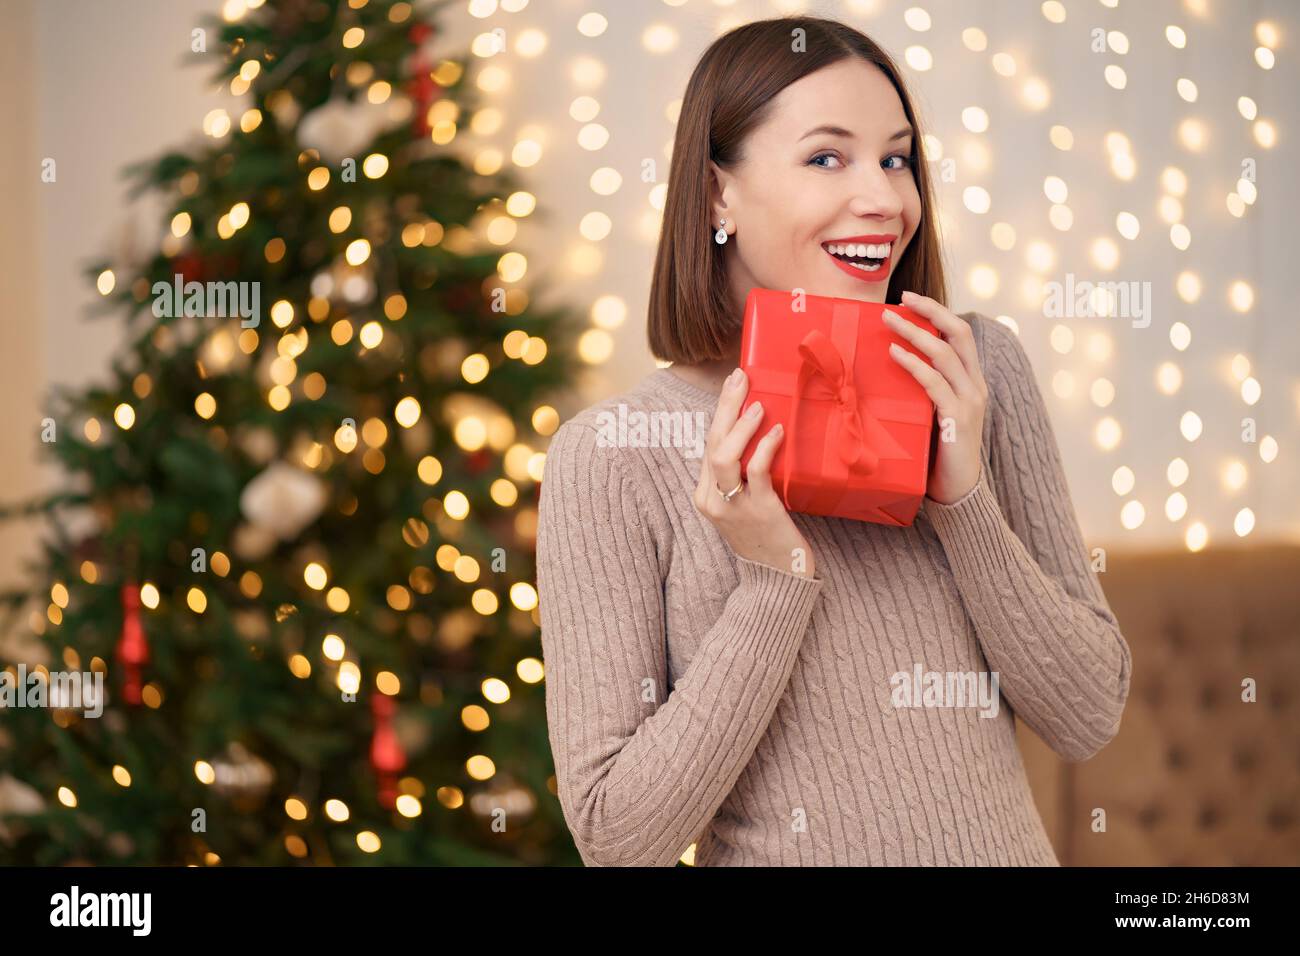 Portrait de jeune femme heureuse lèvres rouges posant avec une boîte cadeau emballée.Gros plan la femme satisfaite a reçu la boîte actuelle.Arrière-plan des lumières de Noël festives. Banque D'Images